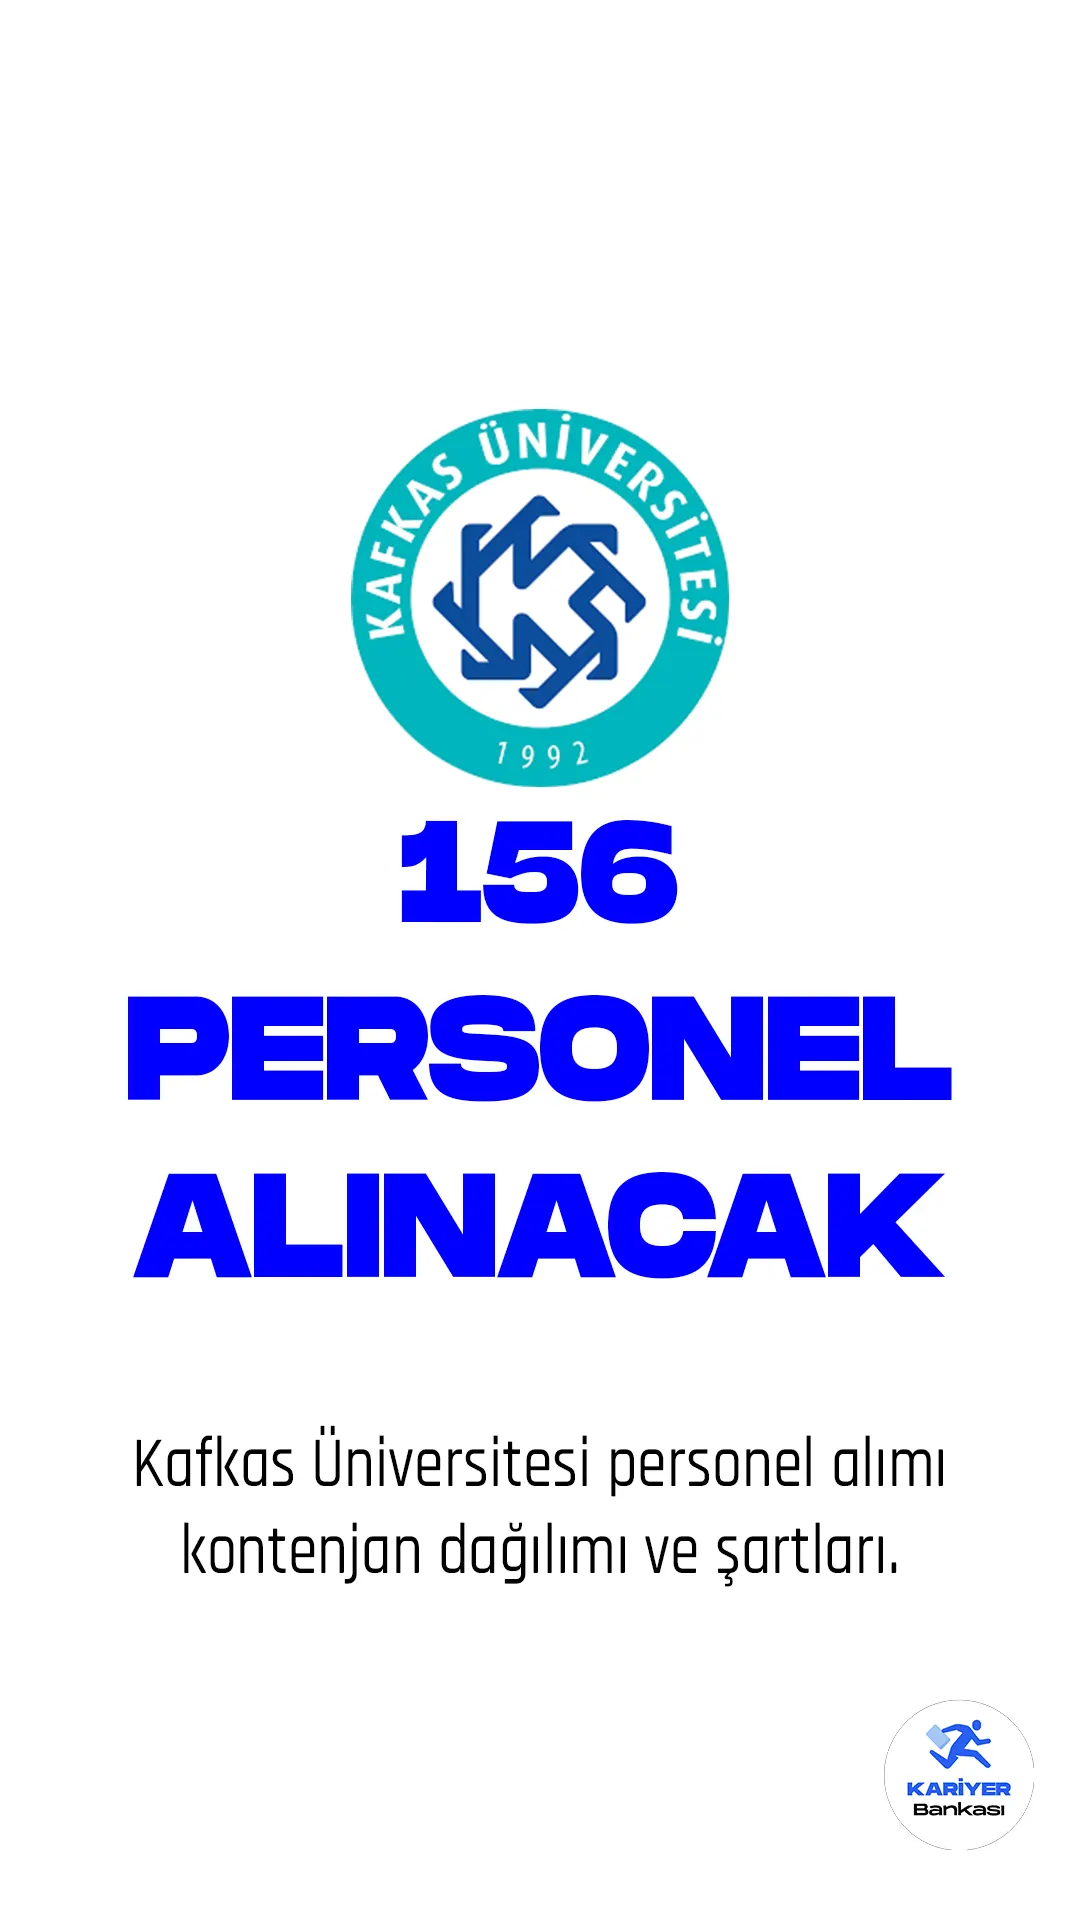 Kafkas Üniversitesi personel alımı başvuruları devam ediyor. 11 Mart'ta Cumhurbaşkanlığı SBB Kamu ilan sitesinde yayımlanan duyuruda, Üniversiteye 156 sözleşmeli personel alımı yapılacağı aktarıldı. Başvuru yapacak adayların belitilen genel ve özel şartları dikkatle incelemesi gerekmektedir.